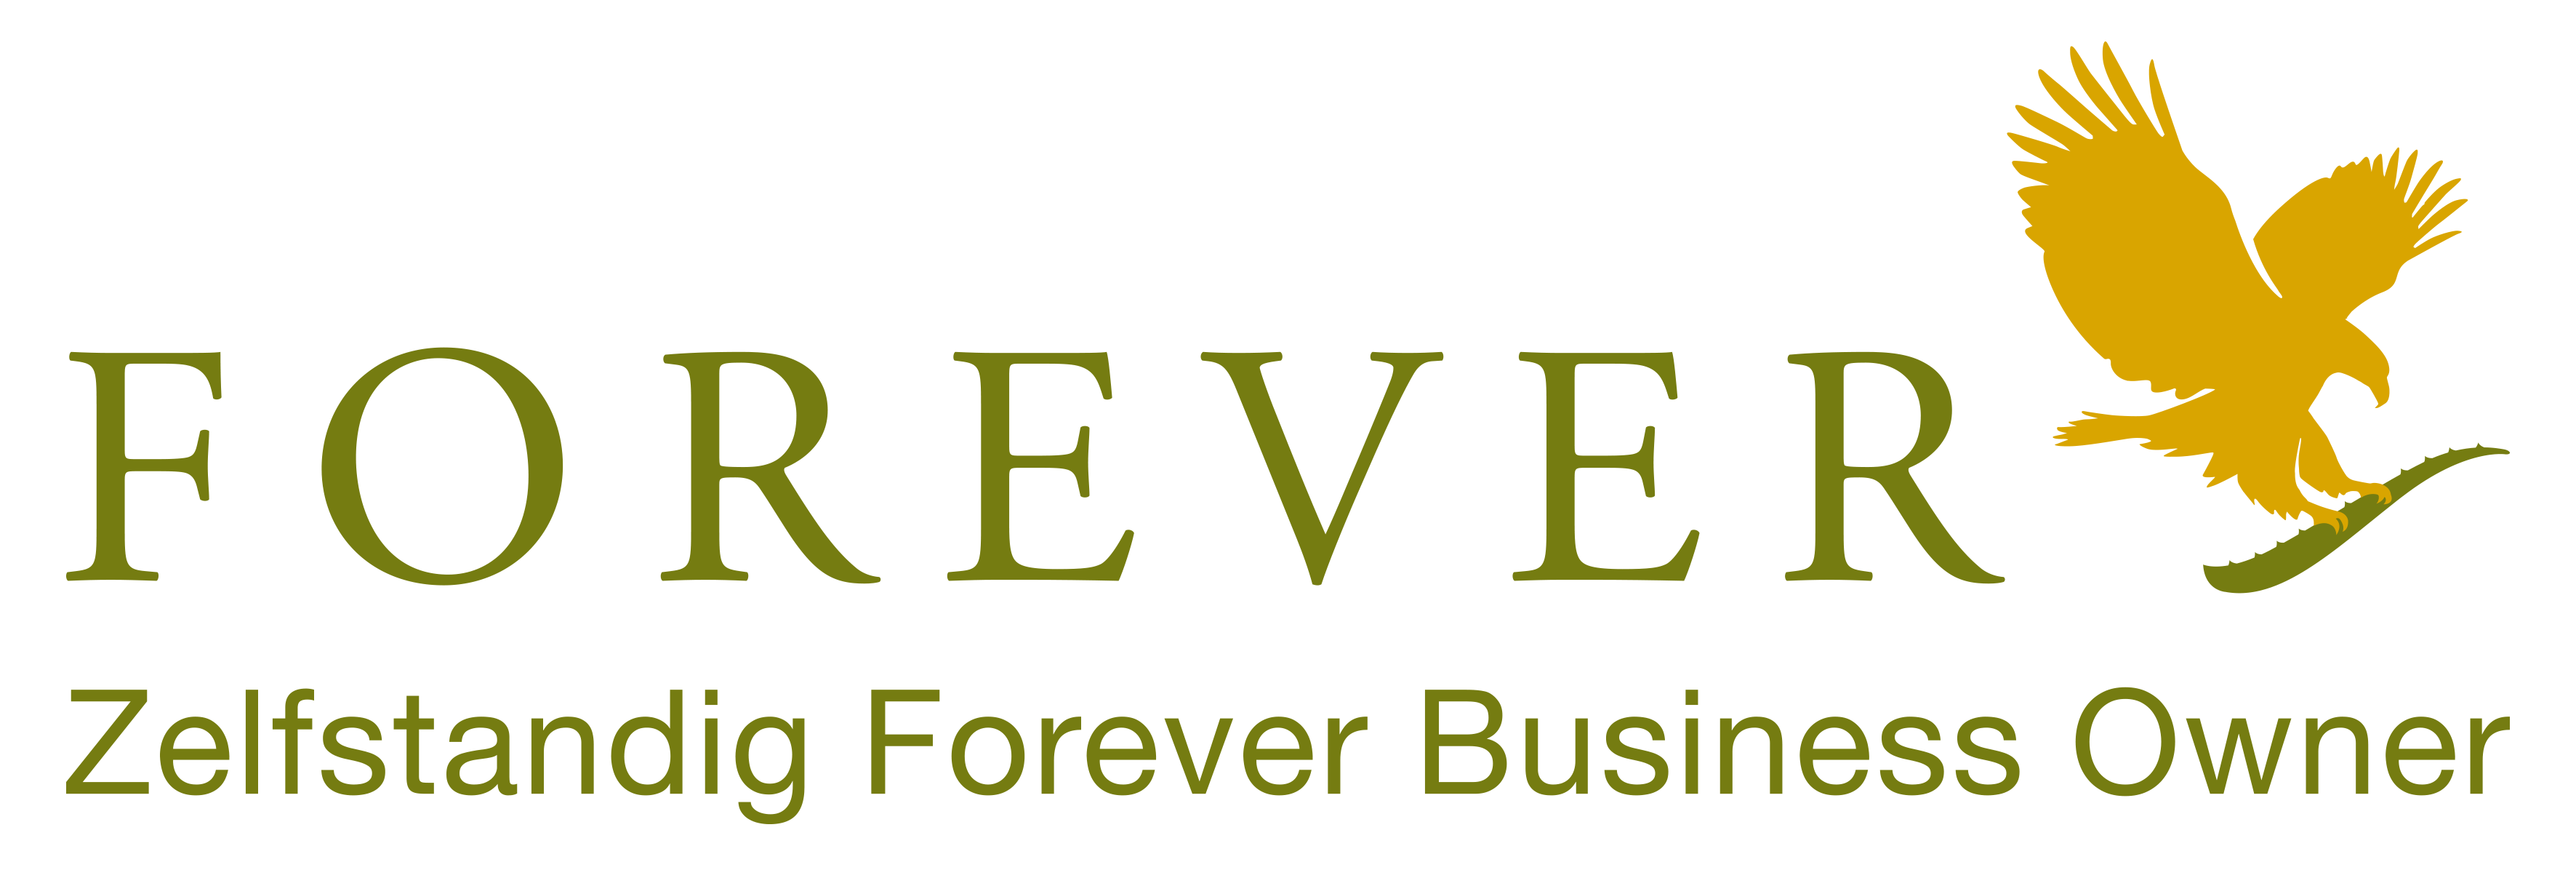 Forever Aloe vera liefert Forever-Produkte an Kunden in Benelux und Frankreich als unabhängiger Geschäftsinhaber für Forever Living. Kaufen Sie Ihre Forever Living-Produkte in Belgien, den Niederlanden, Luxemburg und Frankreich